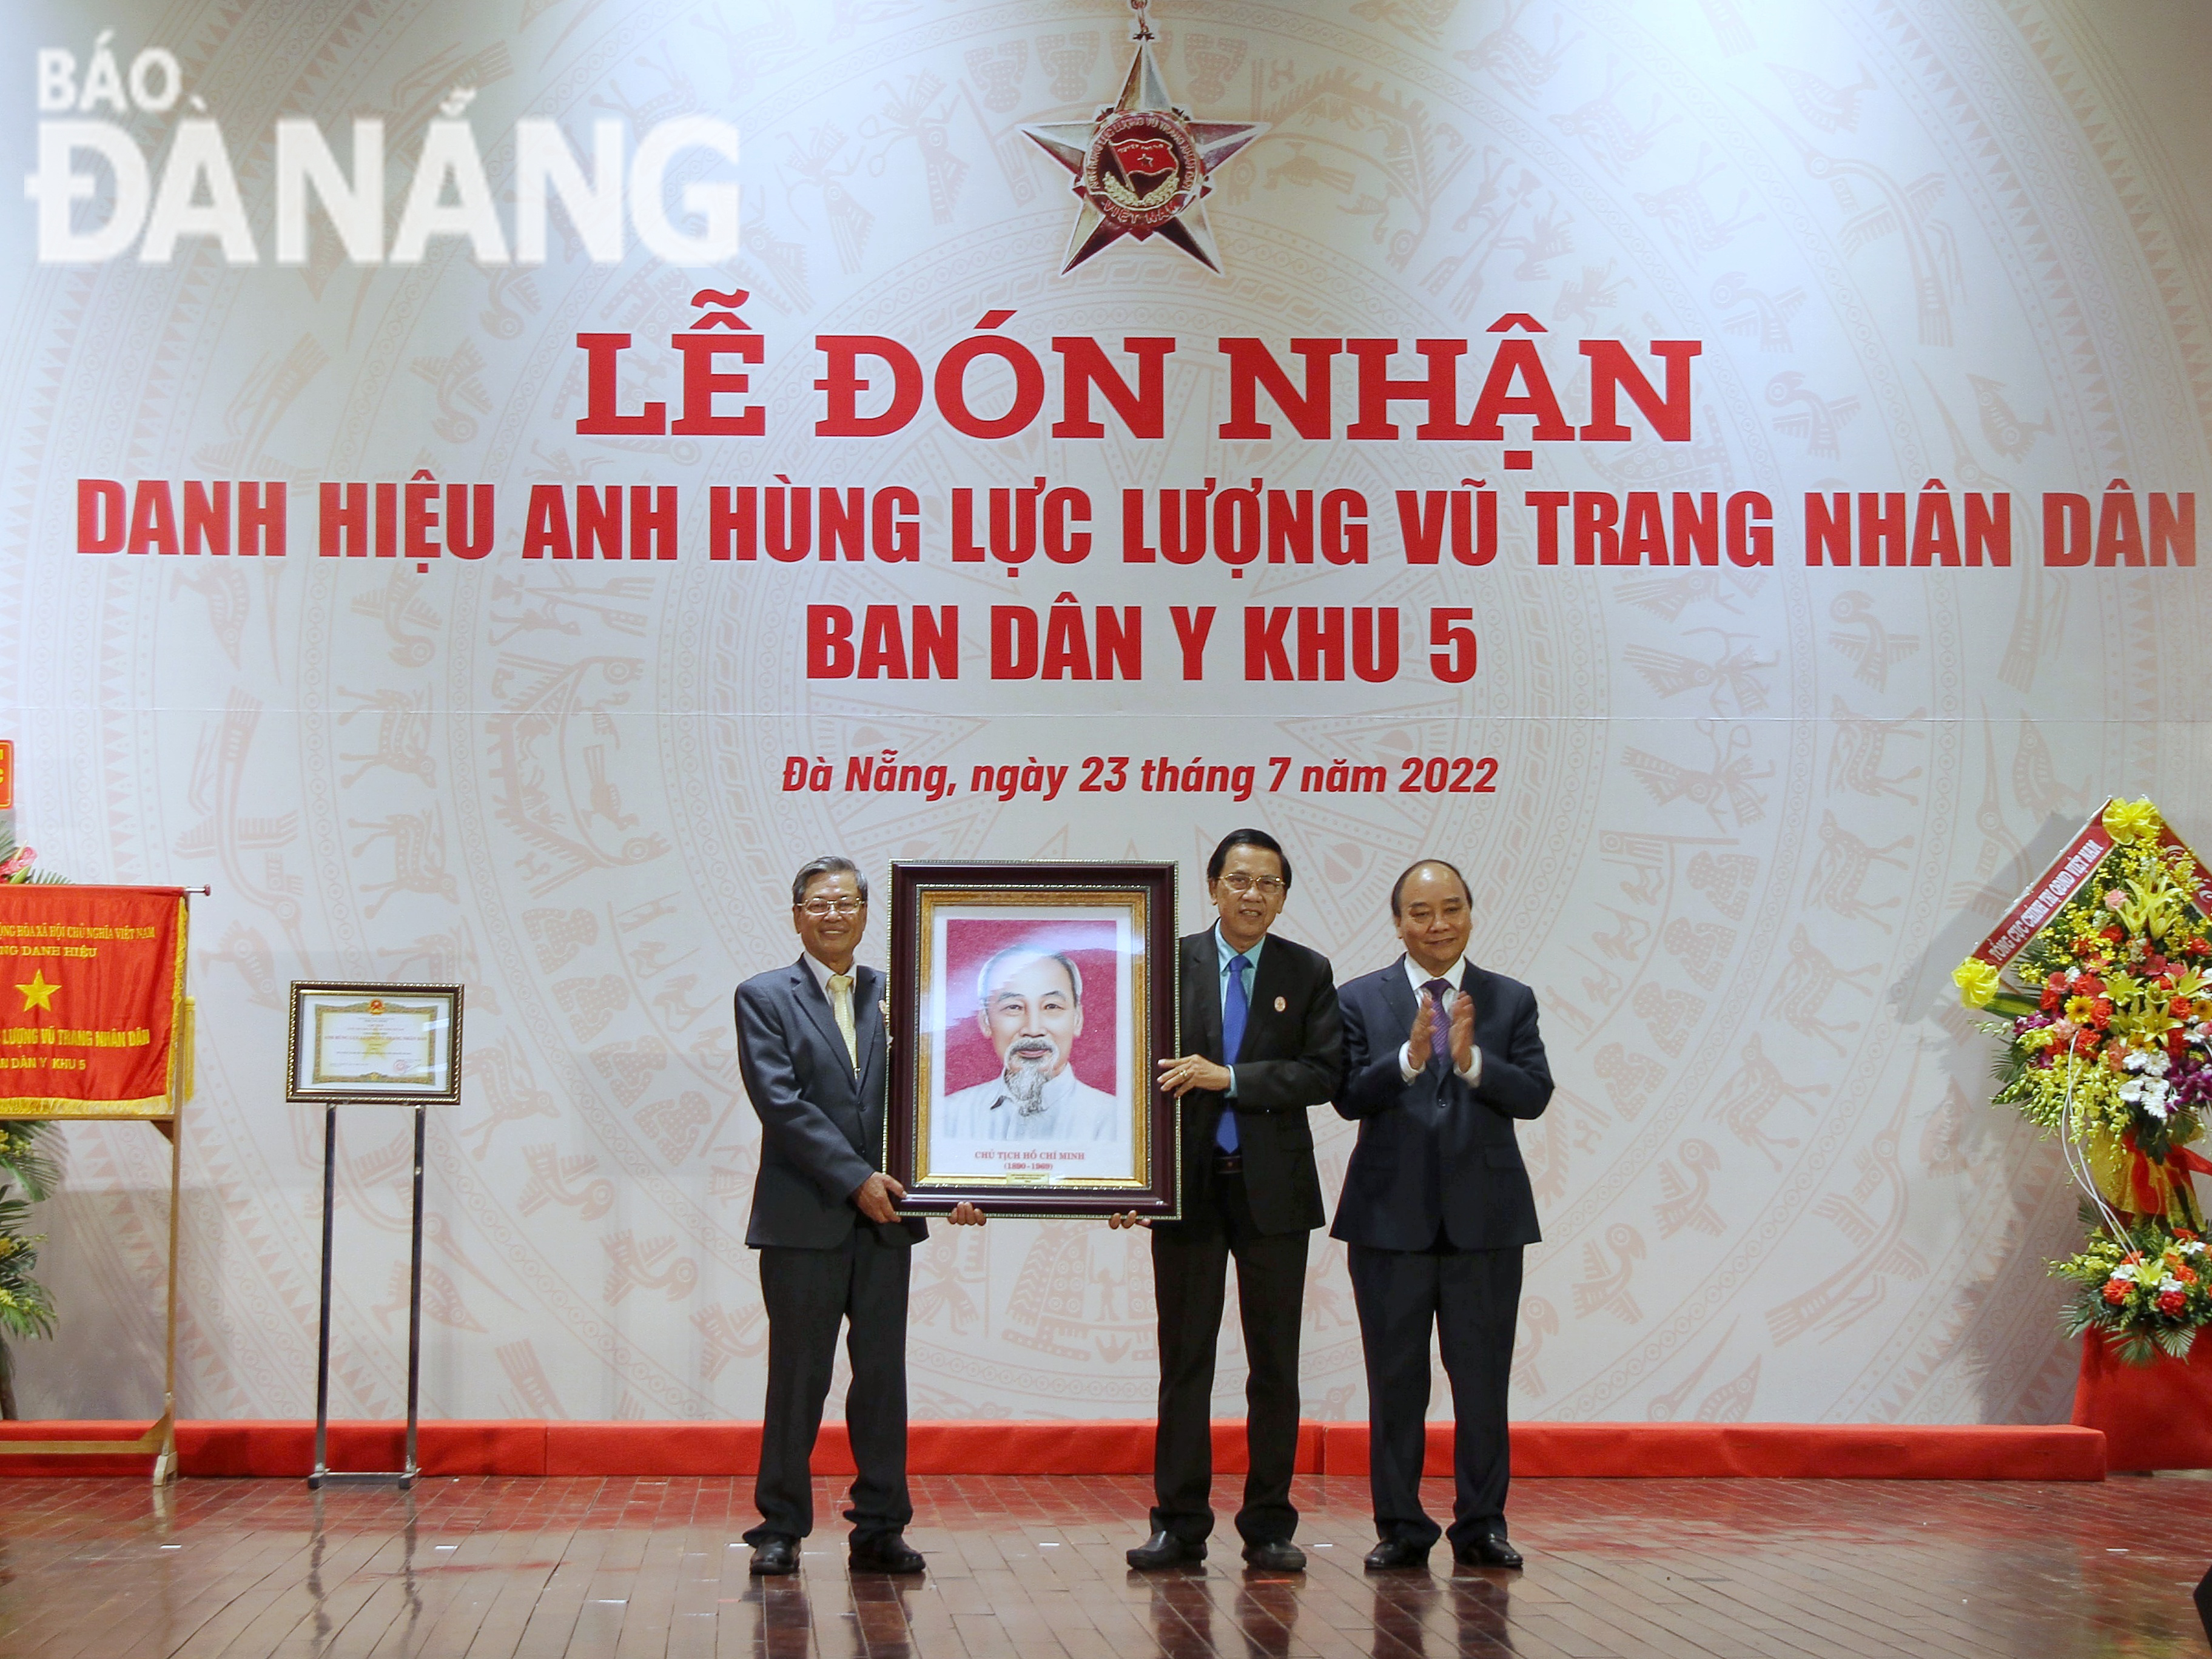 Chủ tịch nước Nguyễn Xuân Phúc (bìa phải) trao quà lưu niệm cho đại diện Ban Dân y Khu 5. Ảnh: L.P